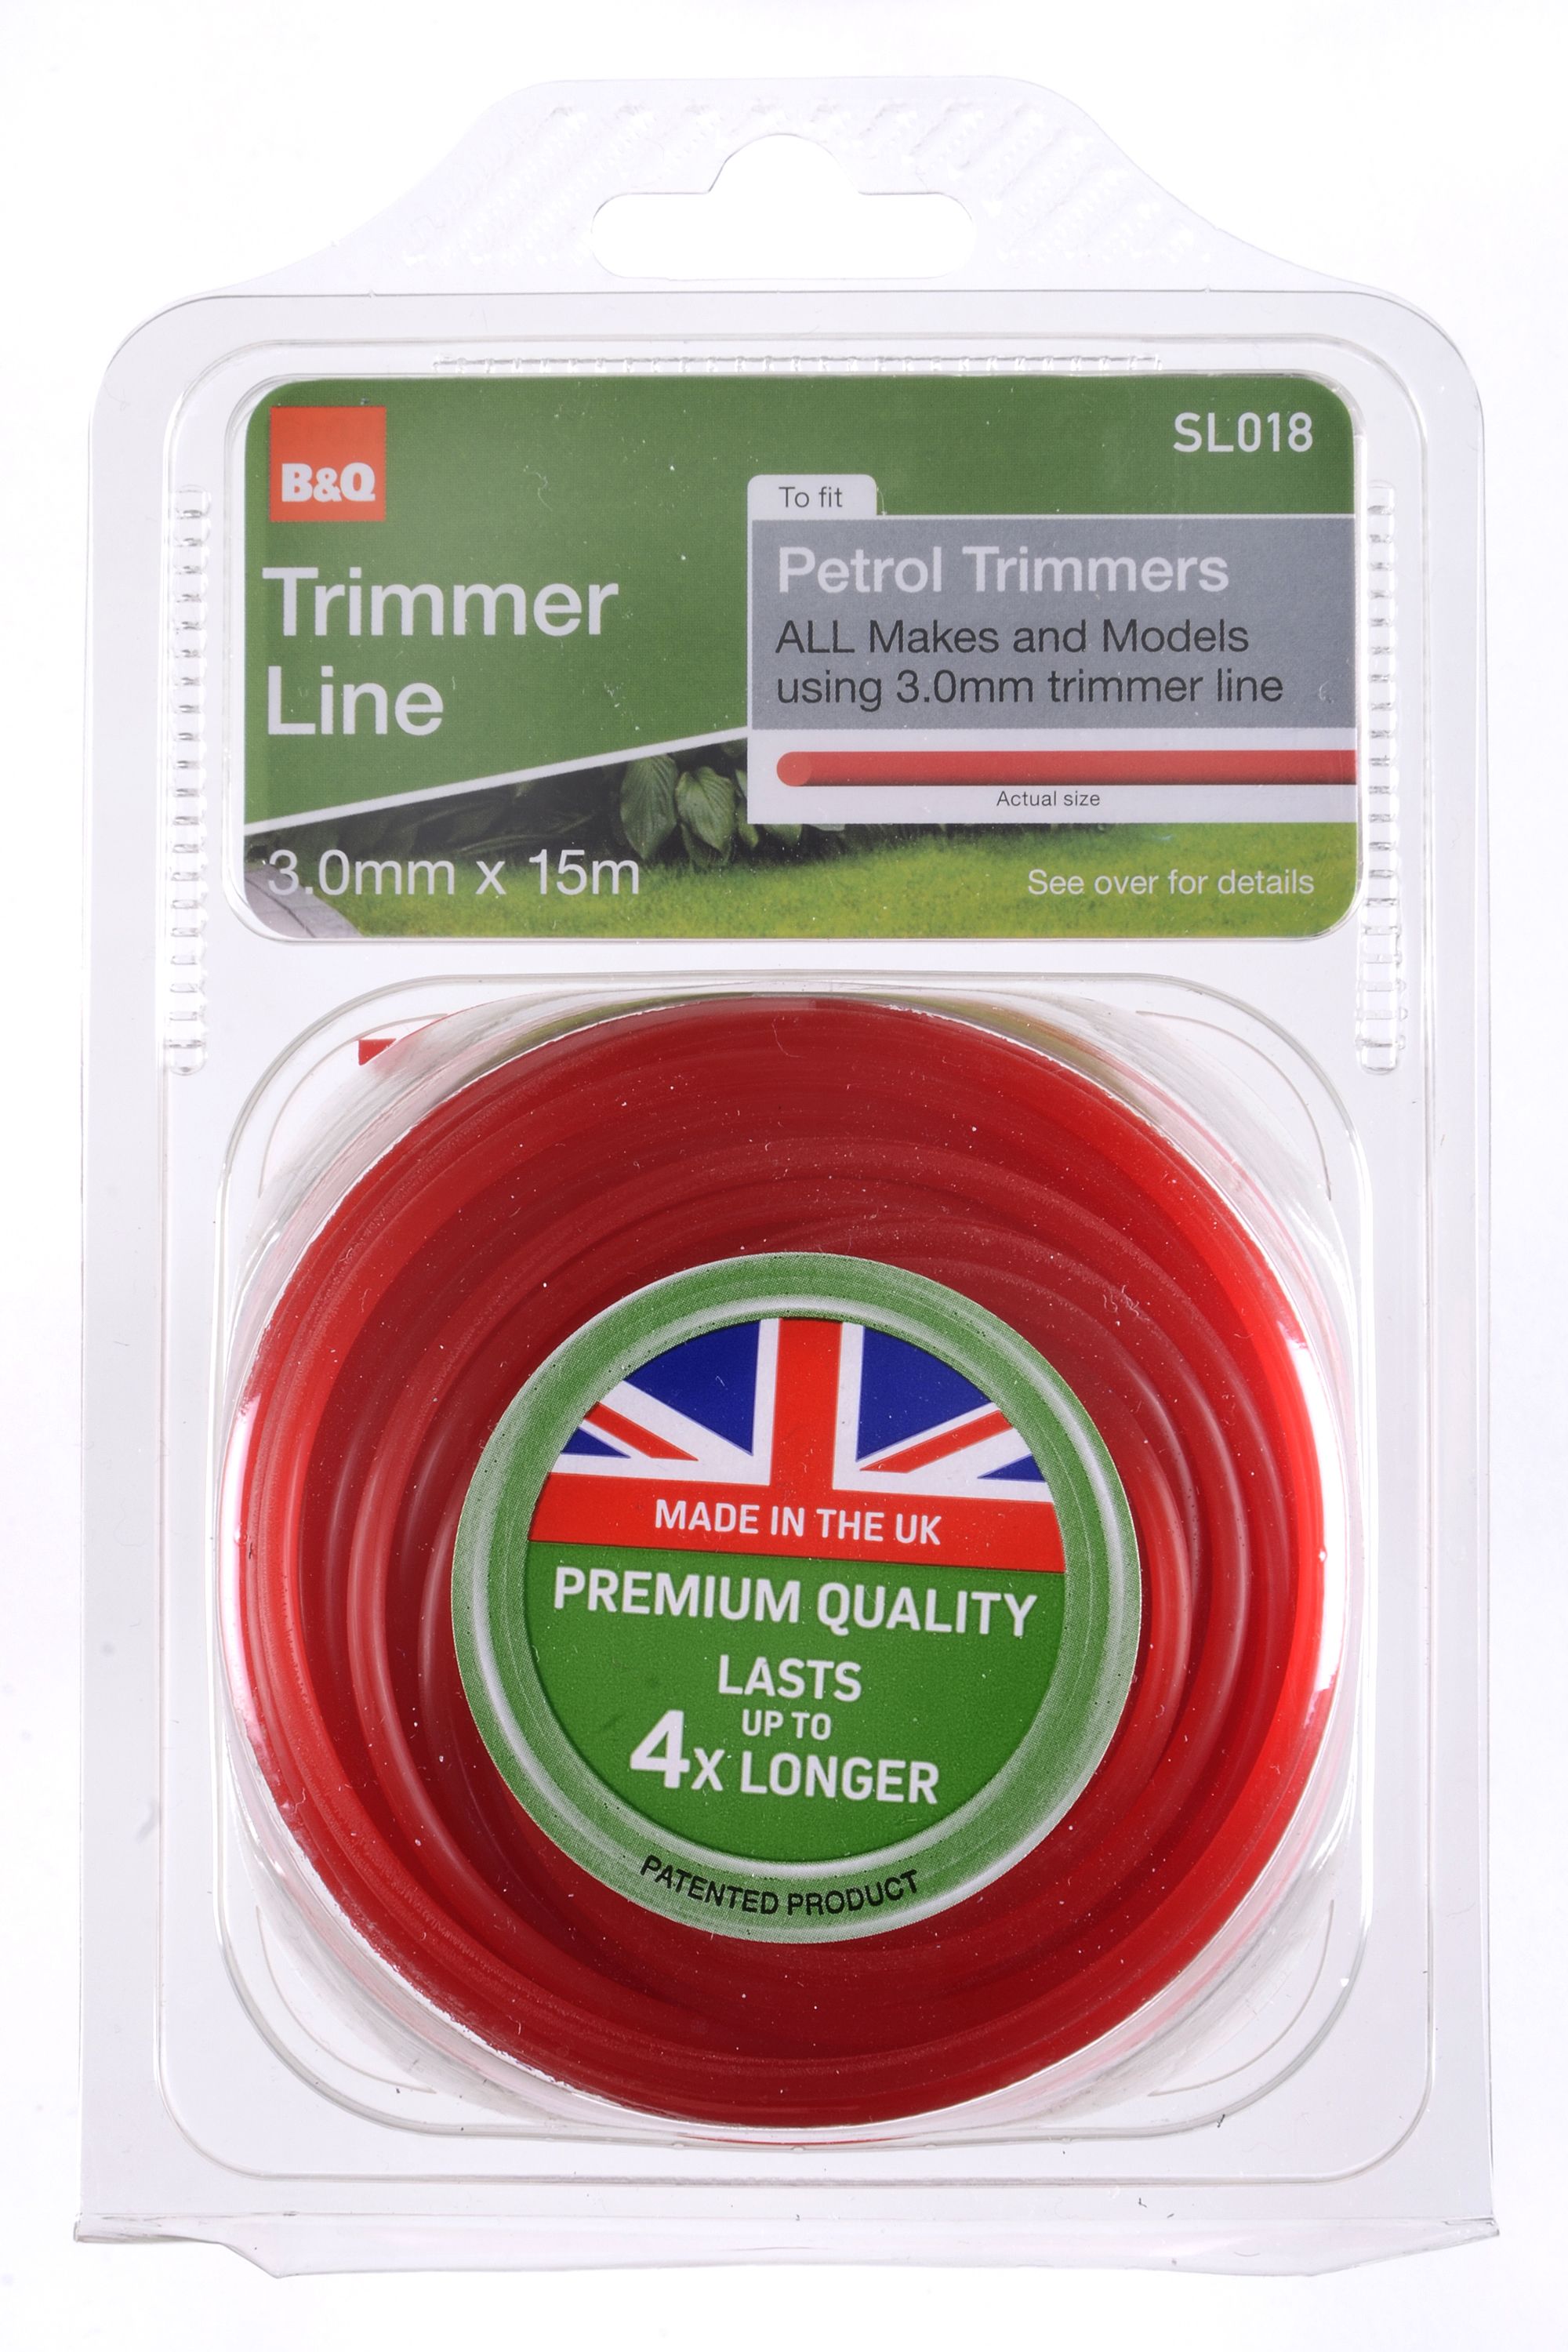 SL018 Trimmer line